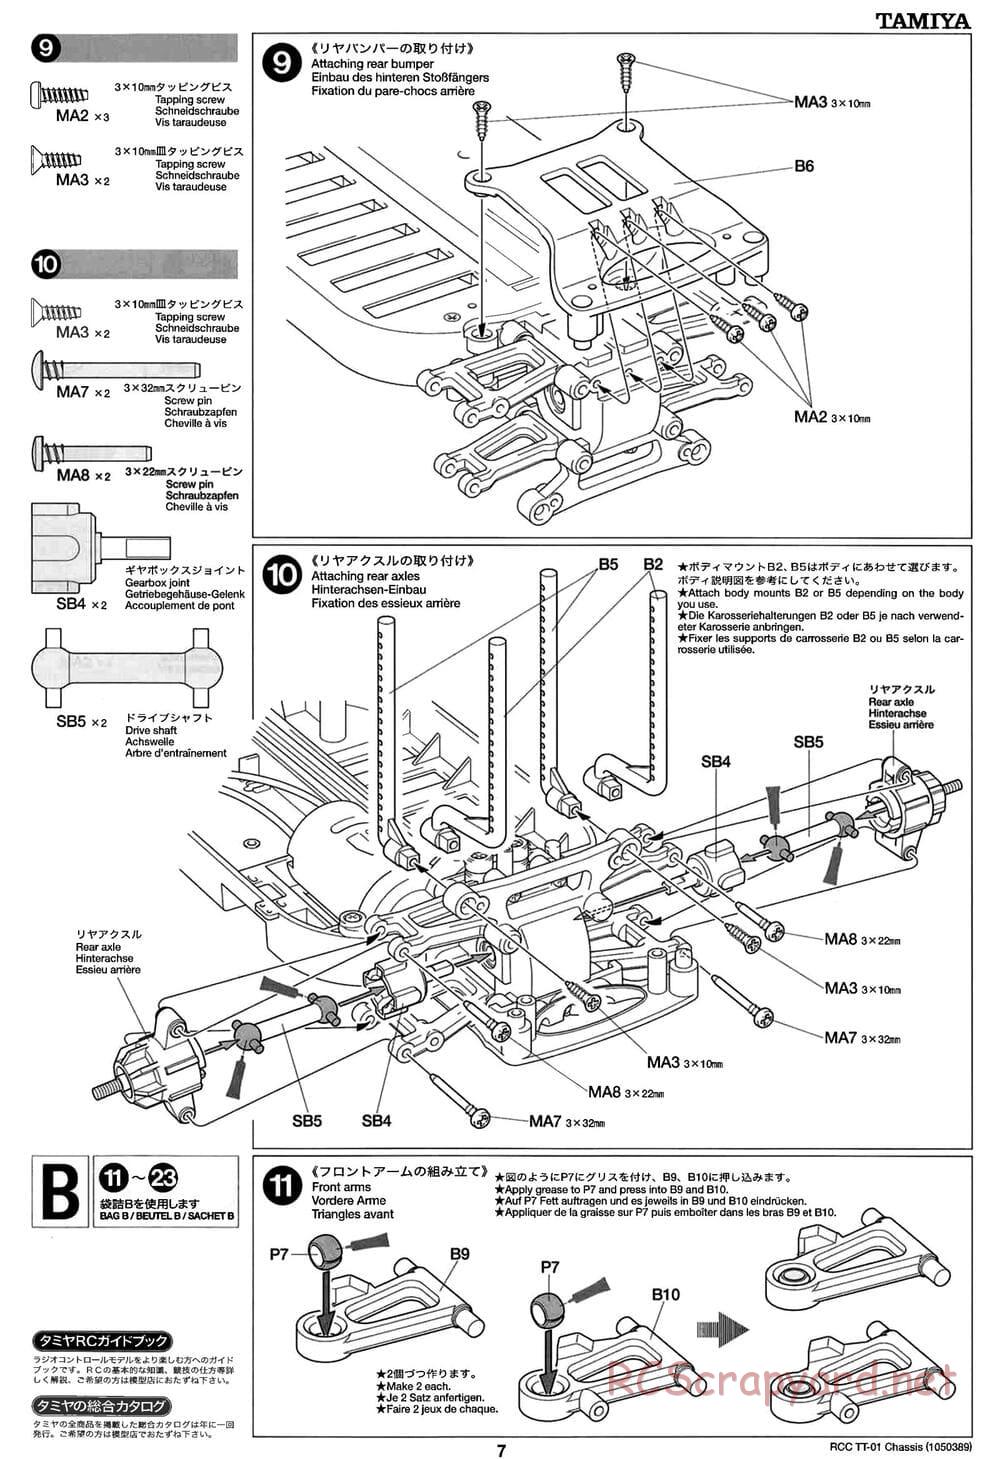 Tamiya - TT-01 Chassis - Manual - Page 7